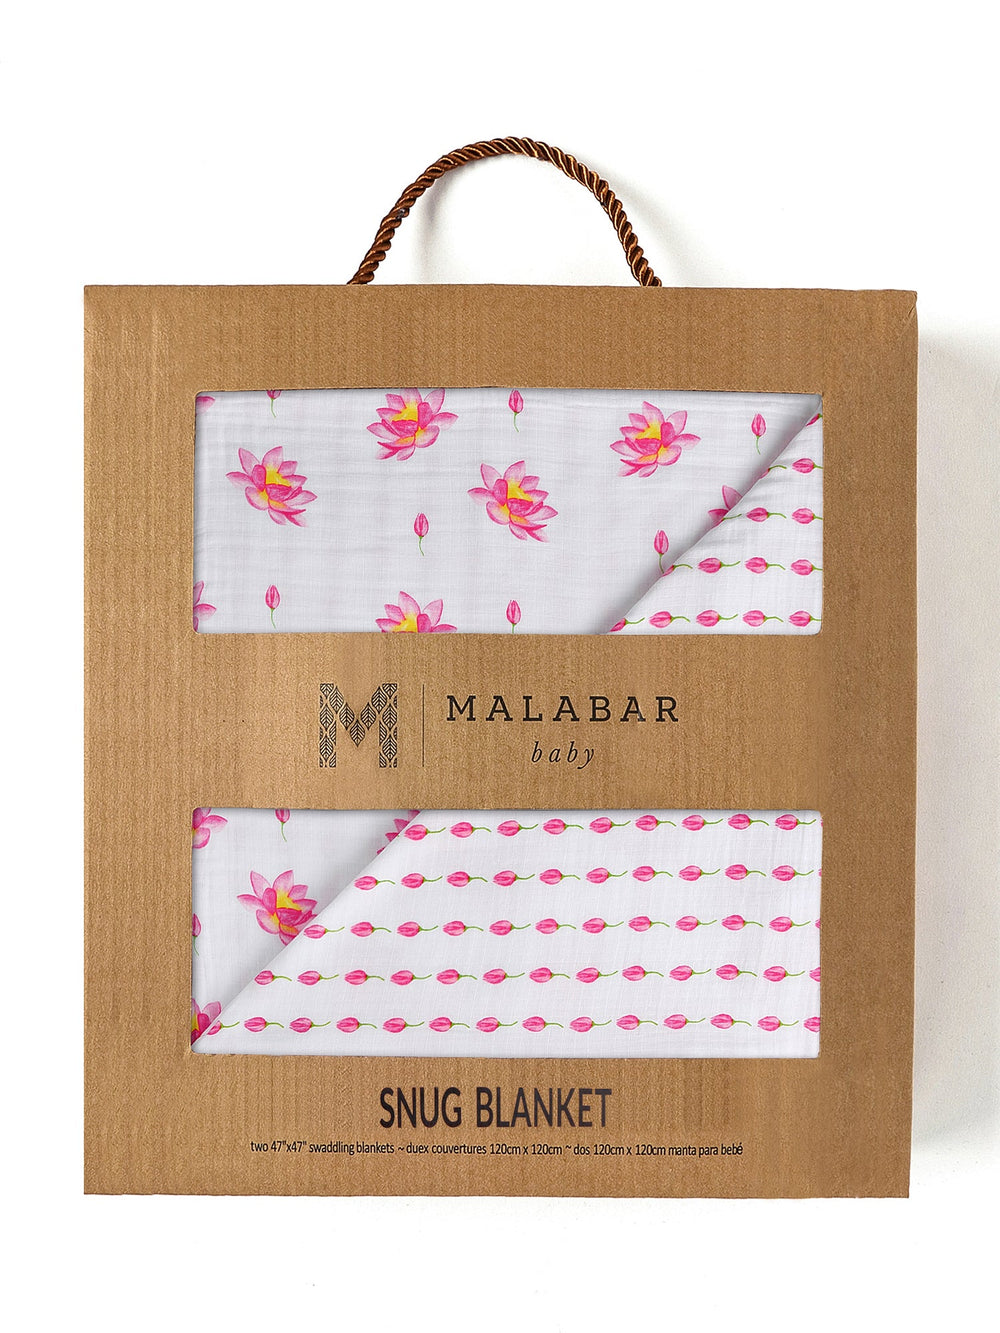 Snug Blanket In Gift Box